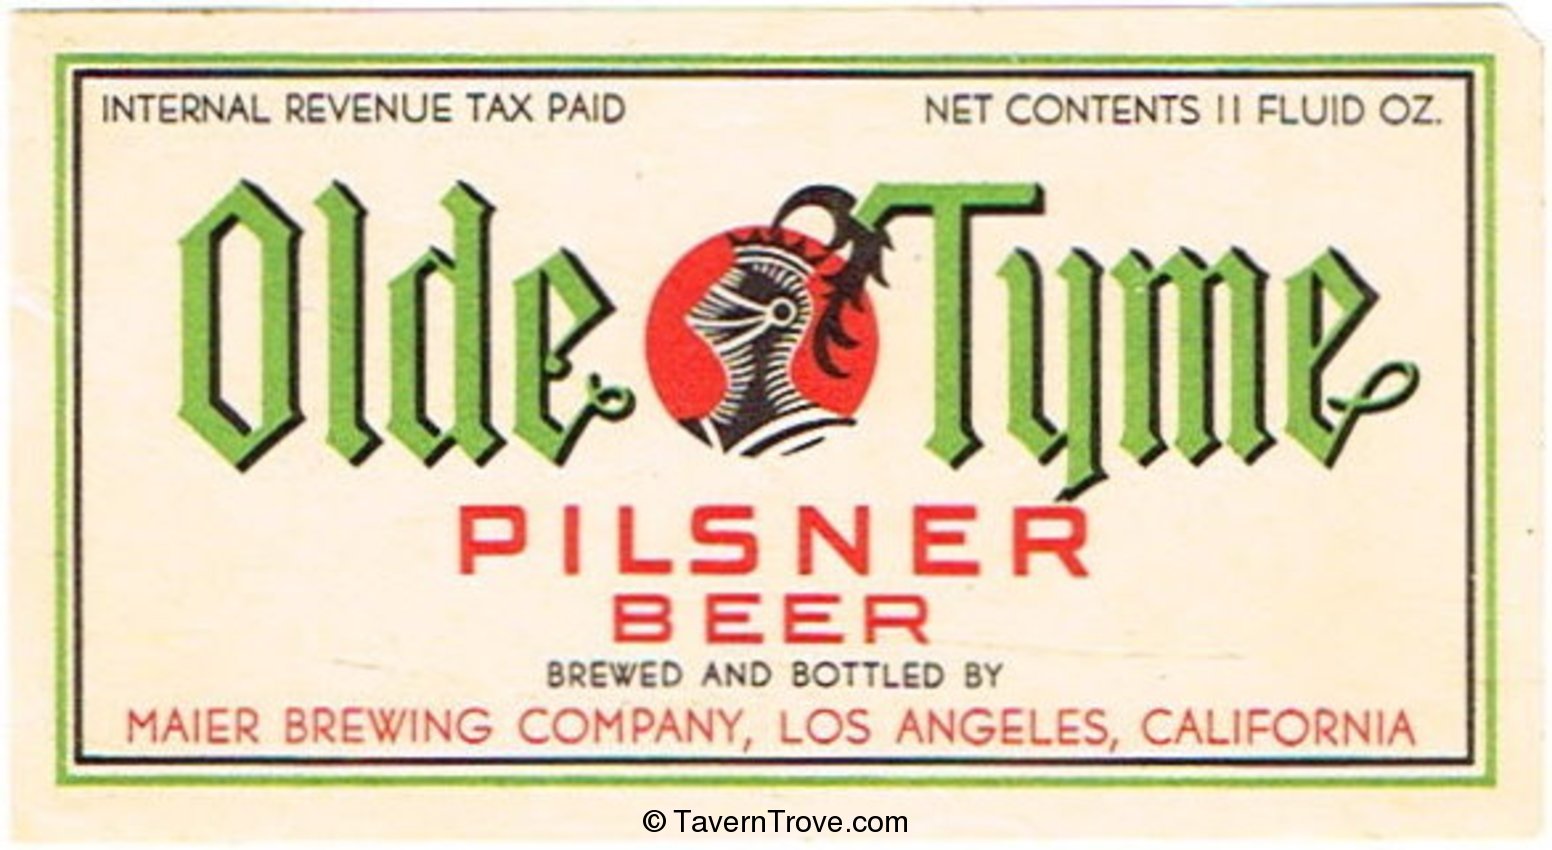 Olde Tyme Pilsner Beer